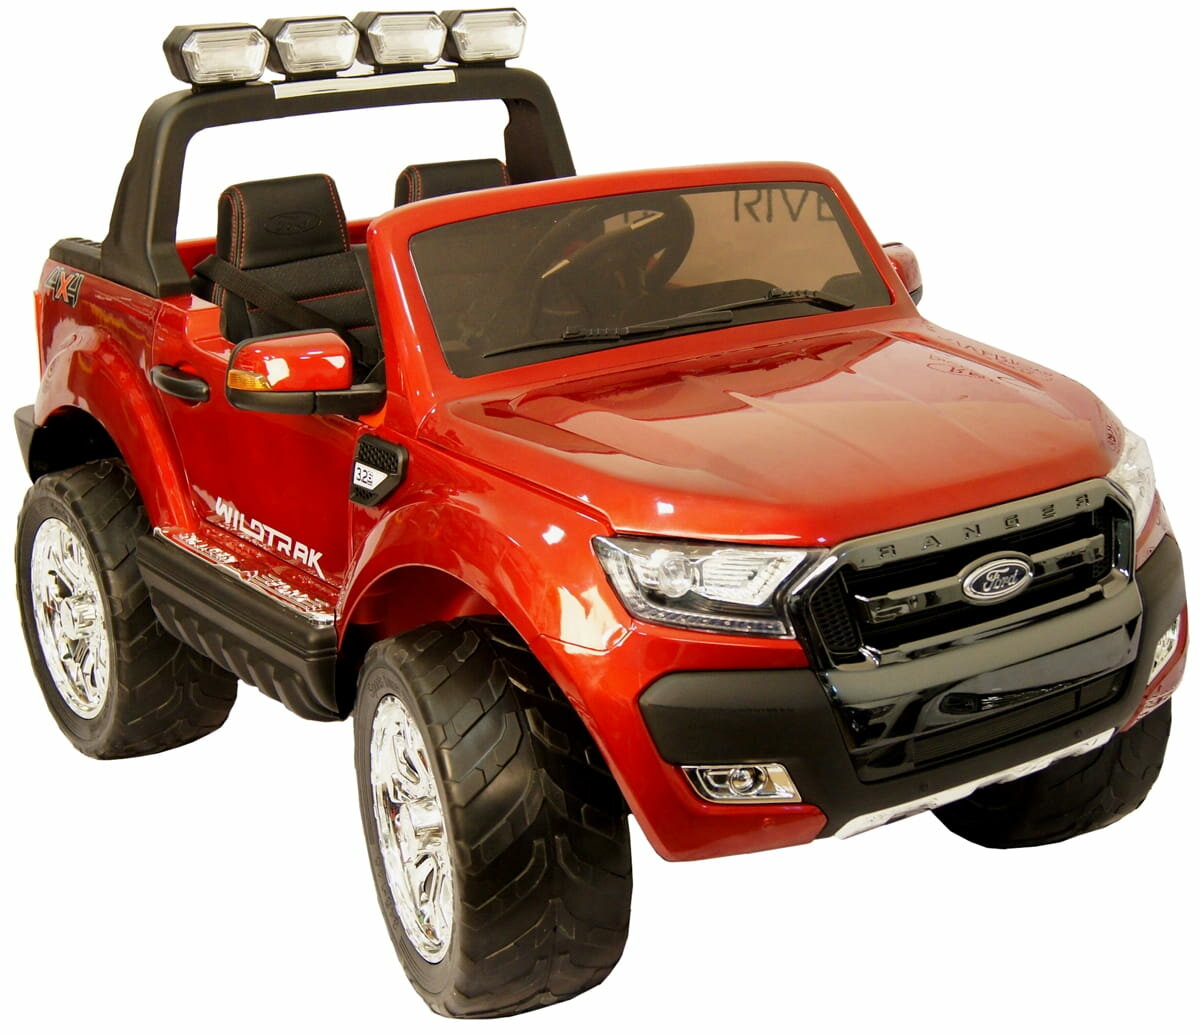 RIVERTOYS электромобиль New Ford Ranger 4WD с дистанционным управлением (лицензионная модель) - вишневый глянец